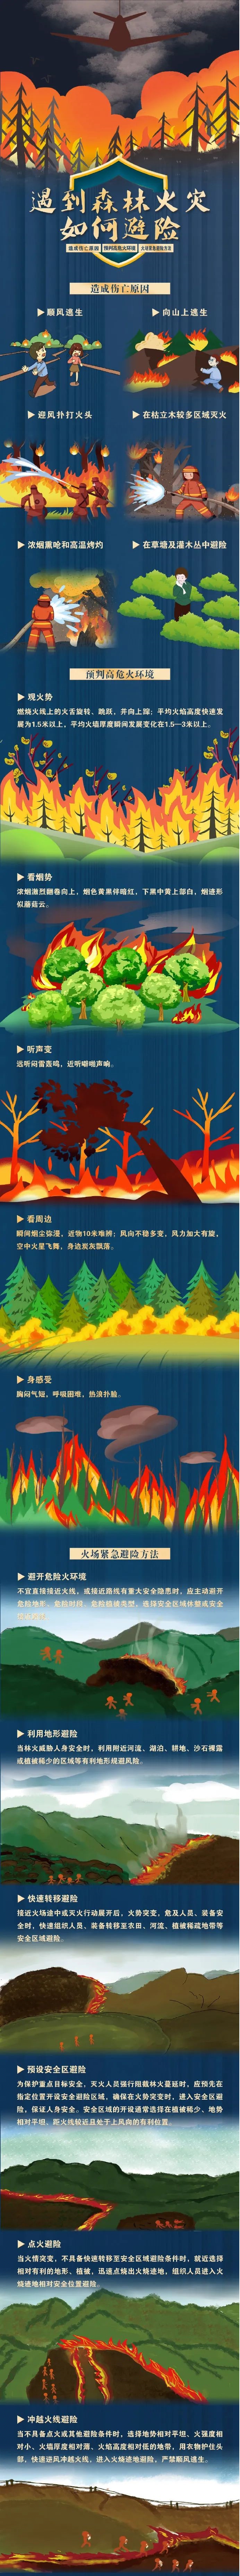 遇森林火灾如何避险.jpg